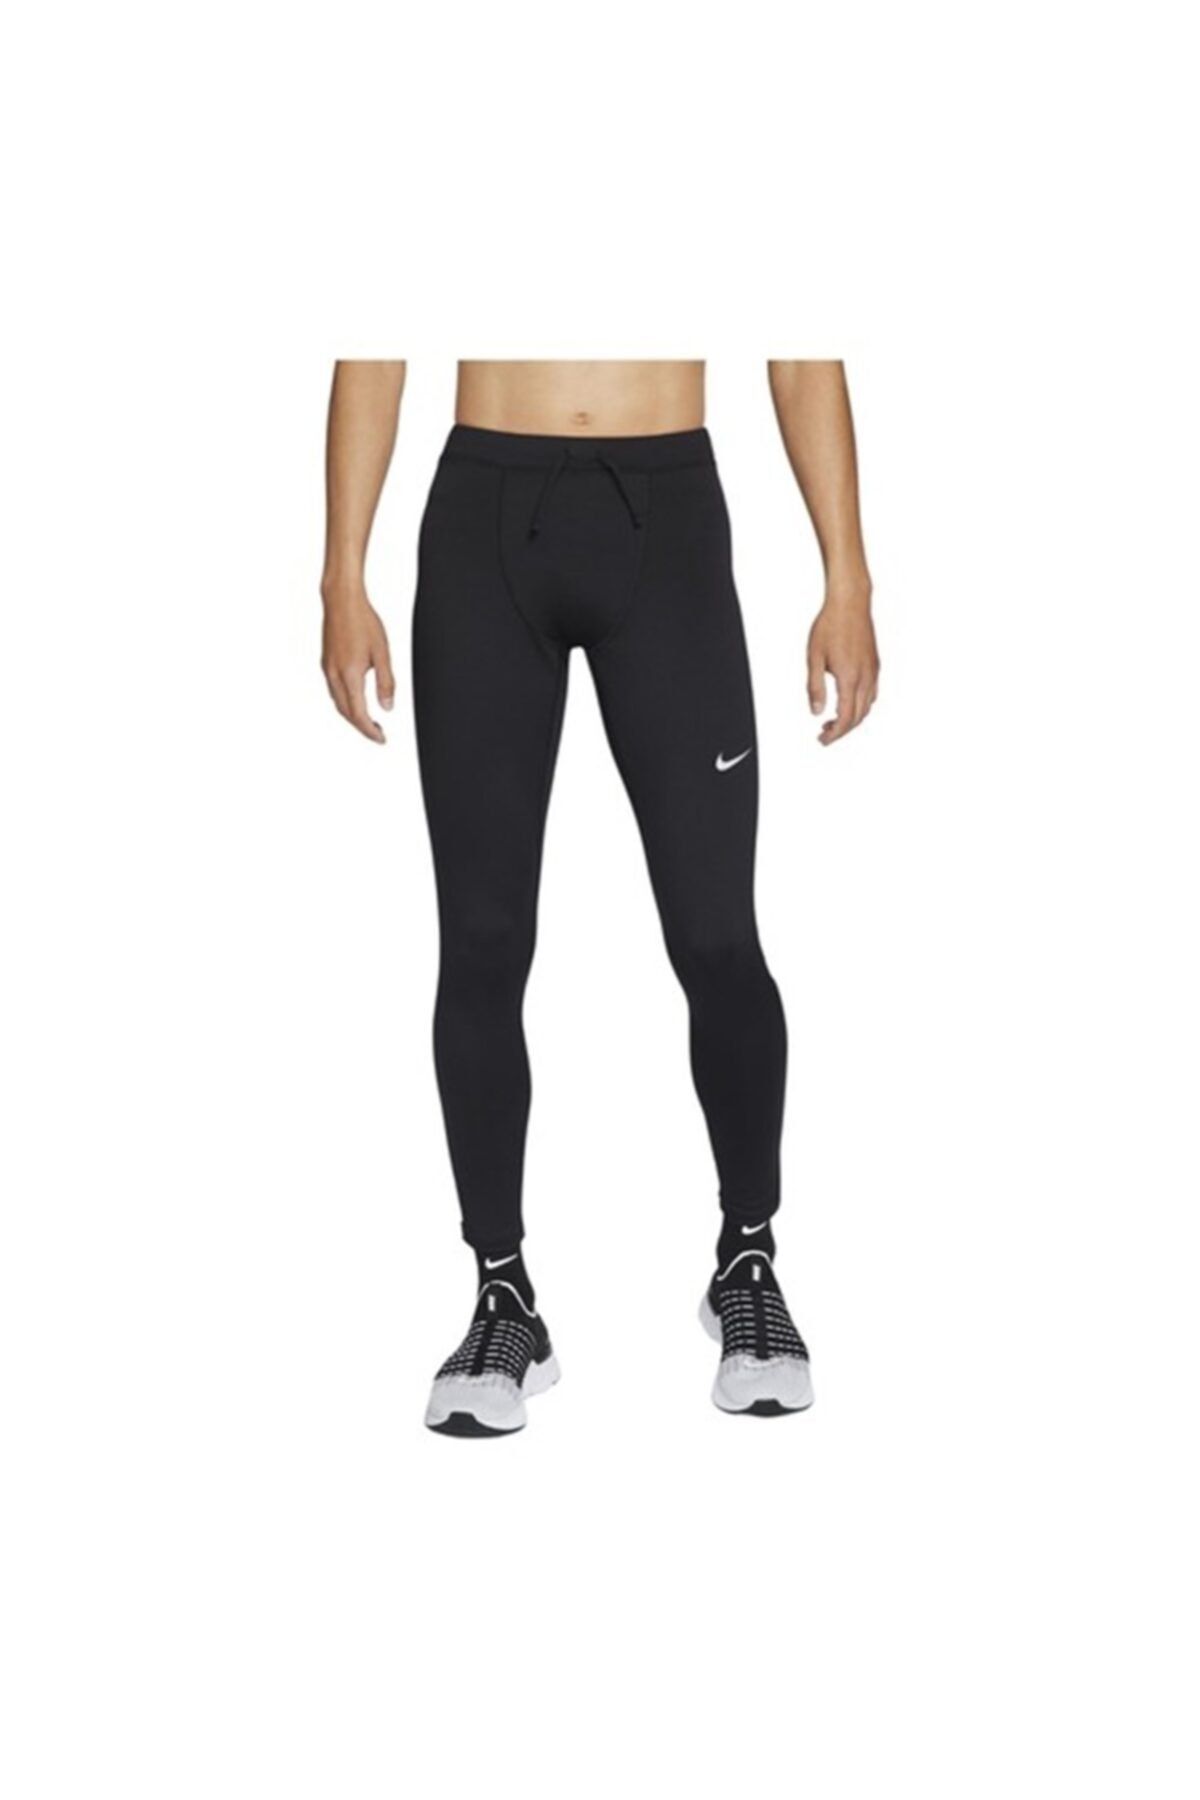 Nike legíny Sportswear CZ8530 063 M za 818 Kč - Allegro